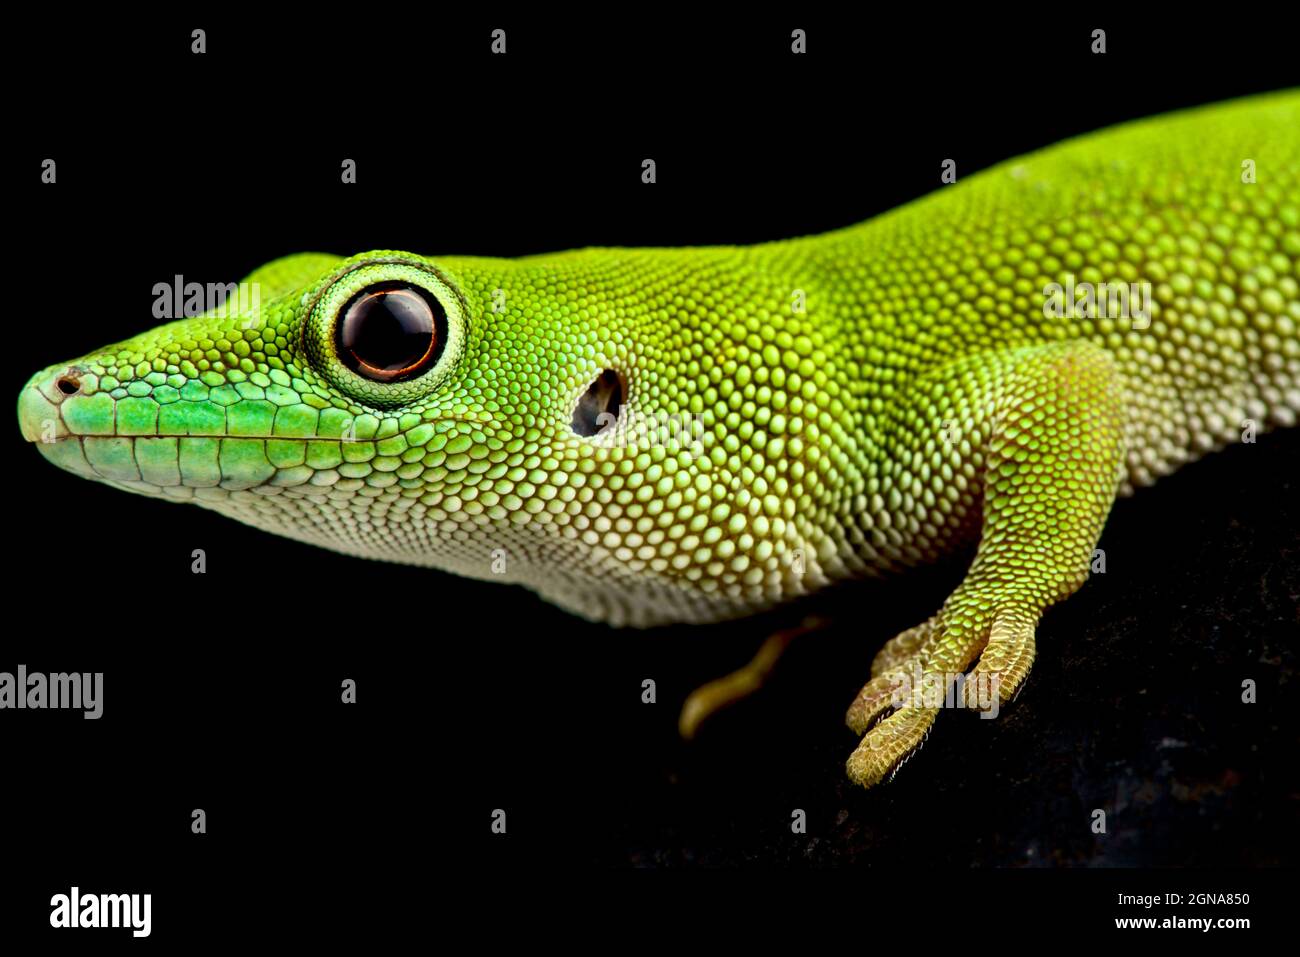 Pemba Island Day gecko (Phelsuma parkeri) Banque D'Images